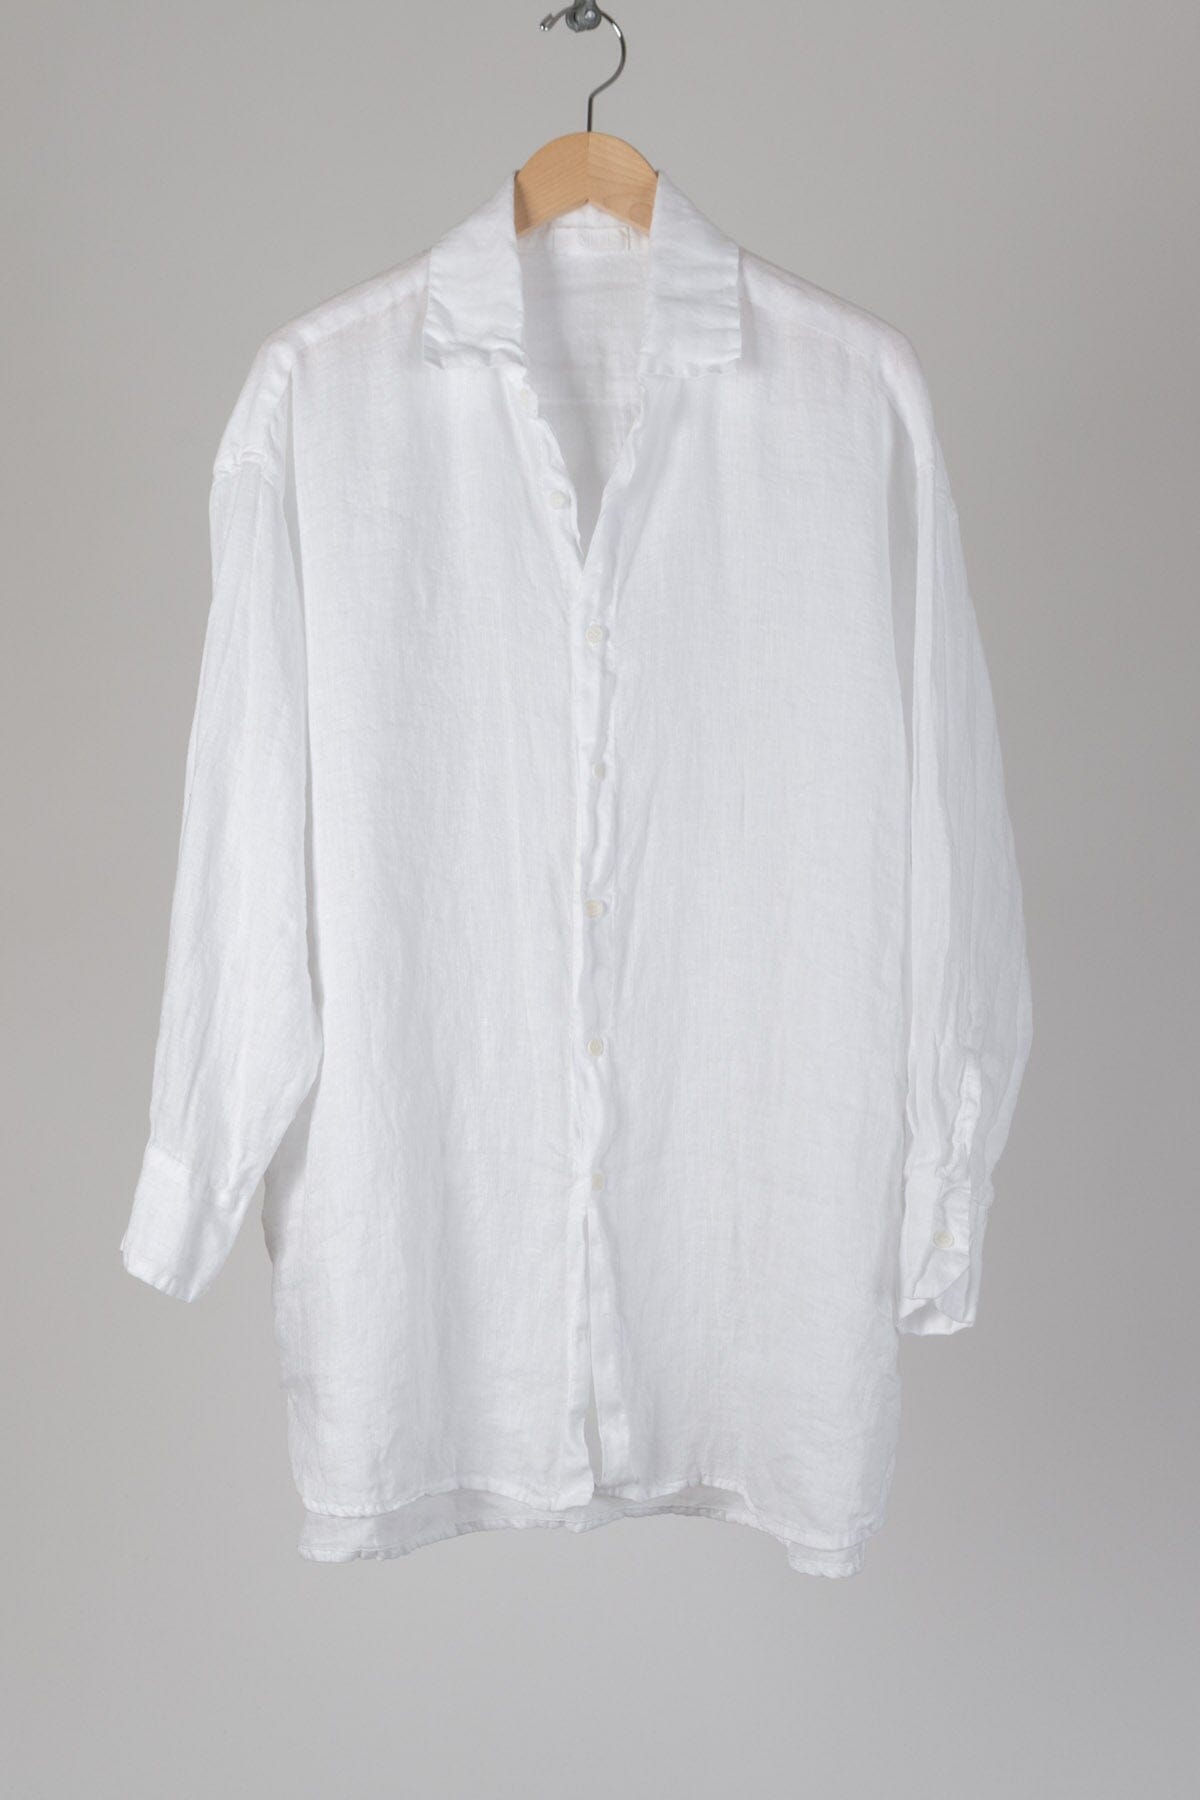 Jane - Linen S10 - Linen Shirt/Top/Tunic CP Shades 